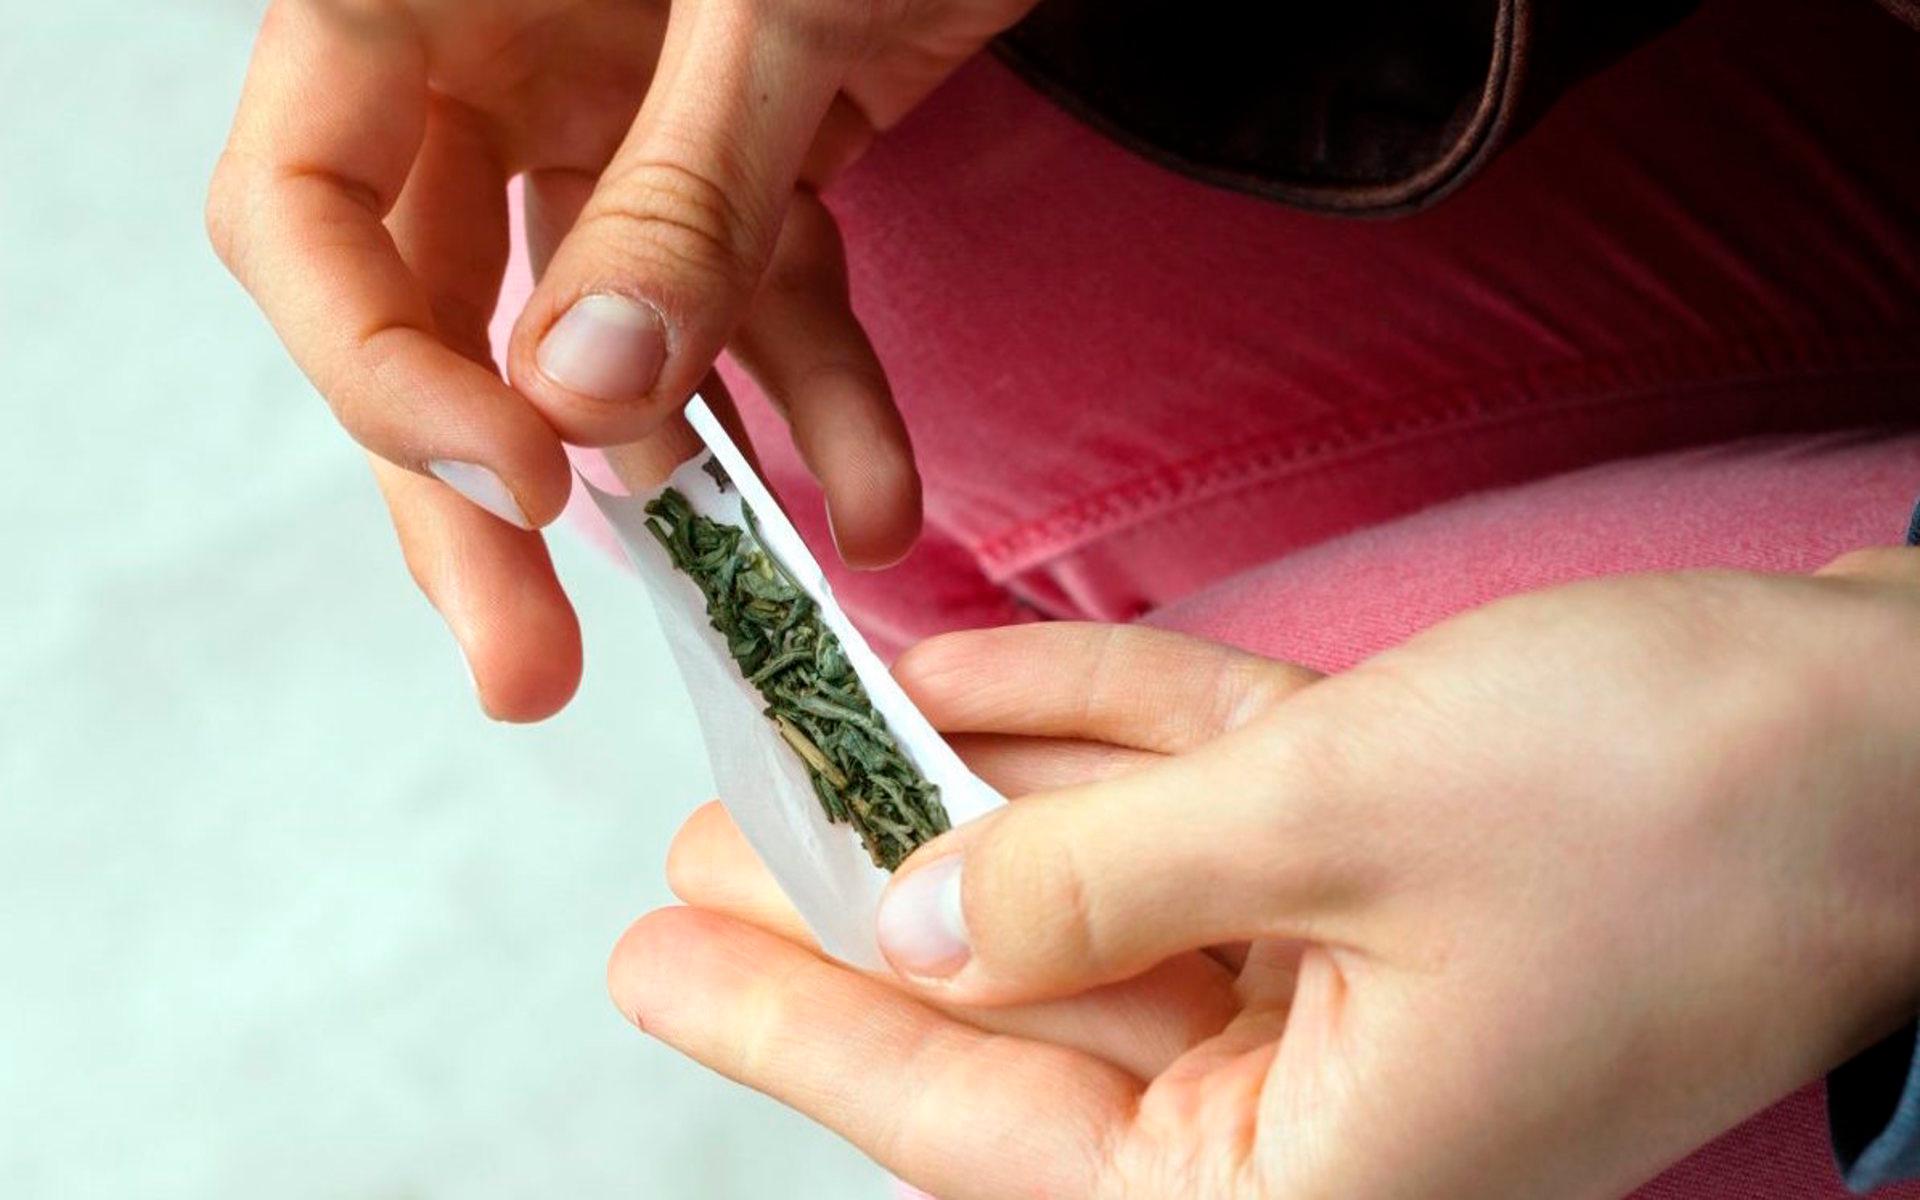 Det förekommer allt för mycket droger bland ungdomar, hasch är vanligast men cannabis, som på bilden, förekommer även. 